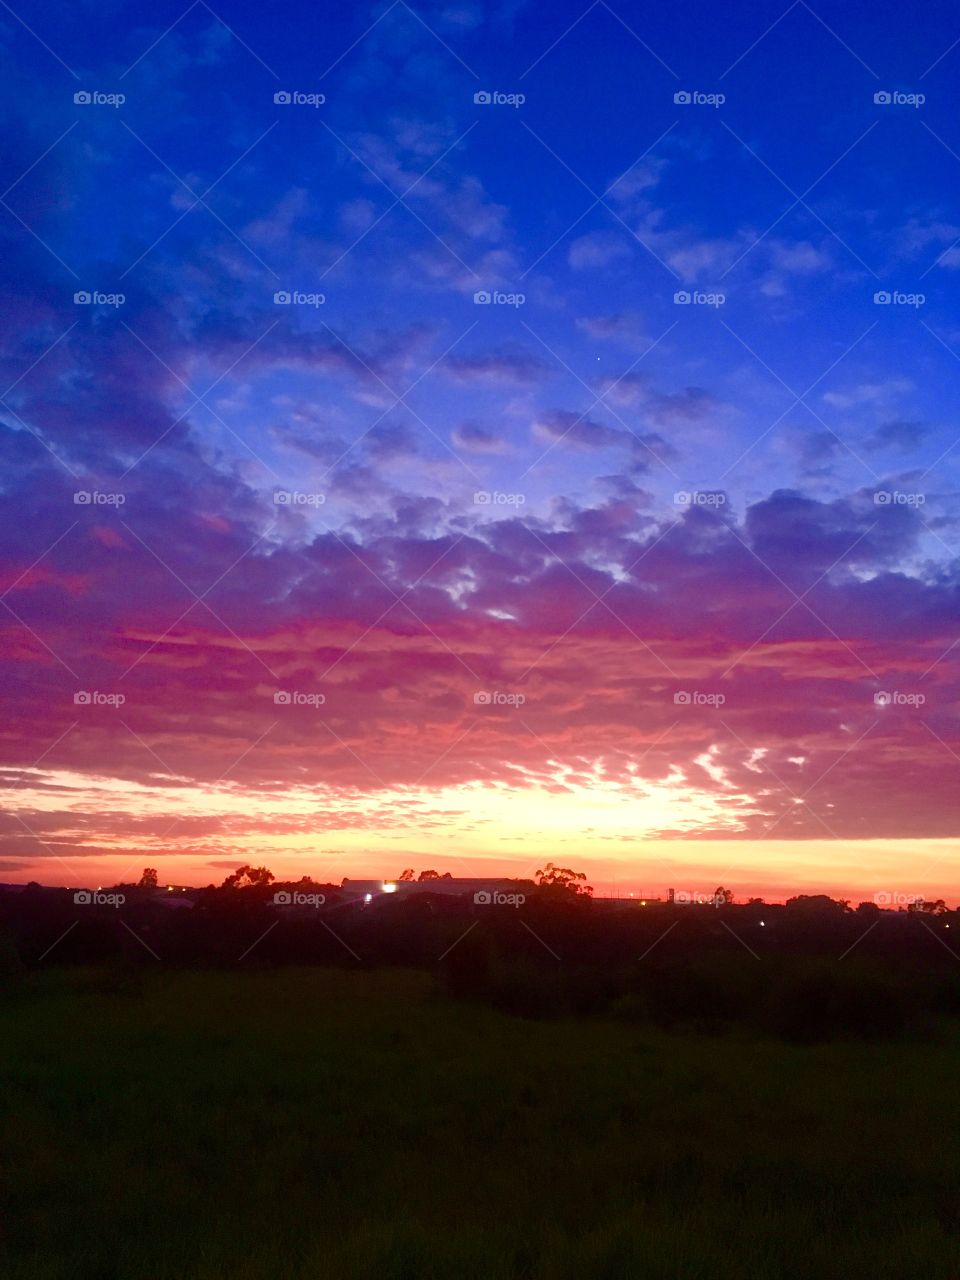 🌅5 minutos para contemplar o colorido #amanhecer em #Jundiaí: que a nossa #sextafeira possa ser proveitosa!
🍃
#sol #sun #sky #céu #photo #nature #morning #alvorada #natureza #horizonte #fotografia #pictureoftheday #paisagem